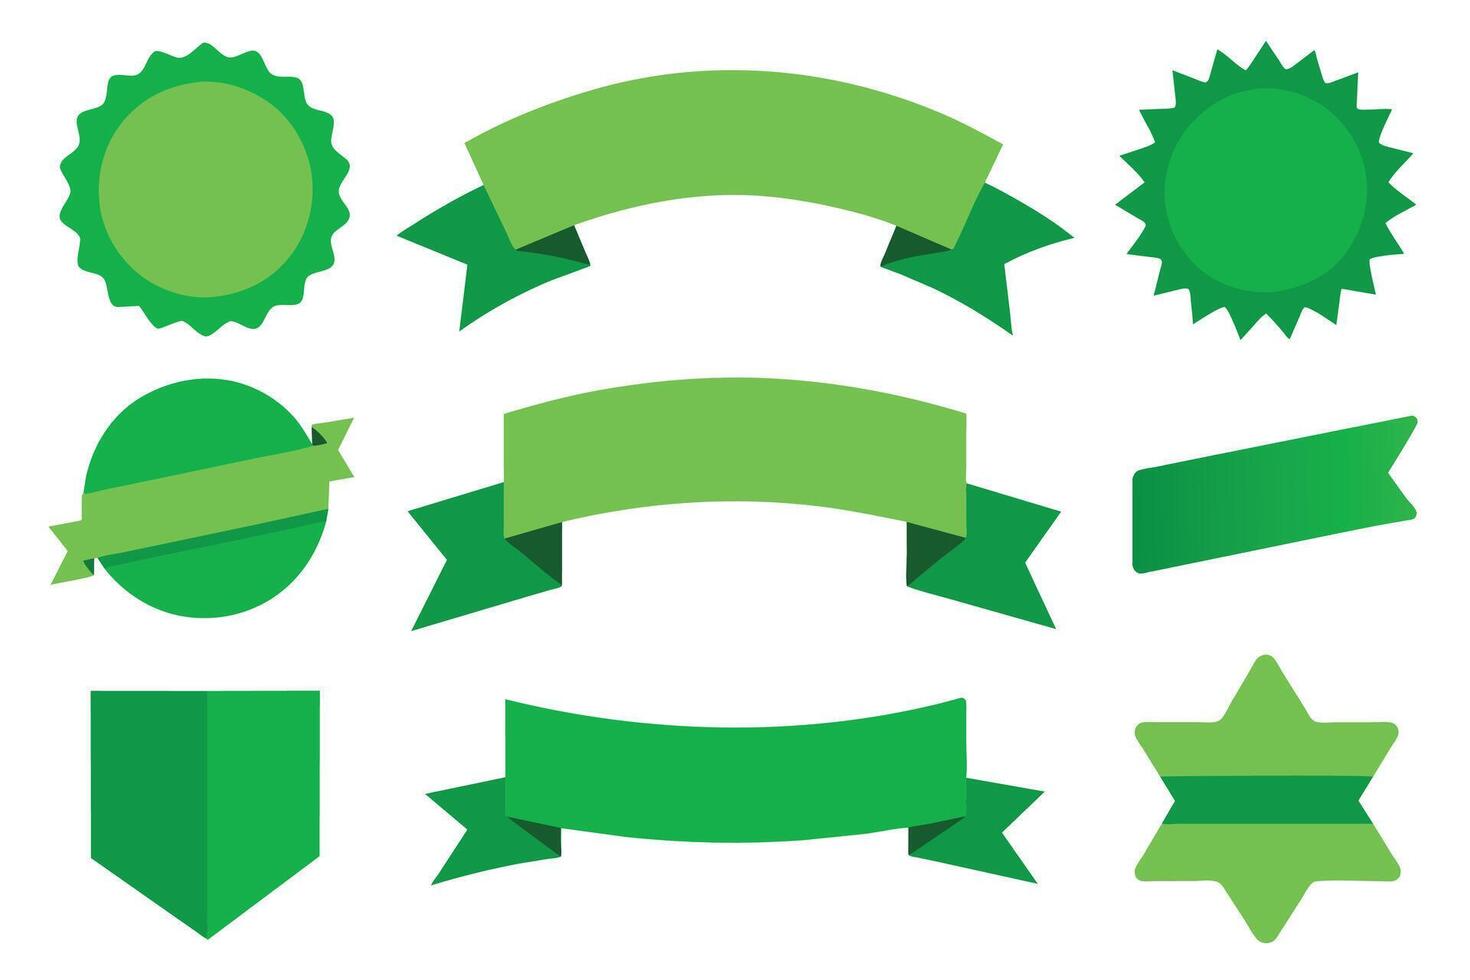 colección de verde cintas etiquetas insignias y etiquetas aislado blanco antecedentes vector